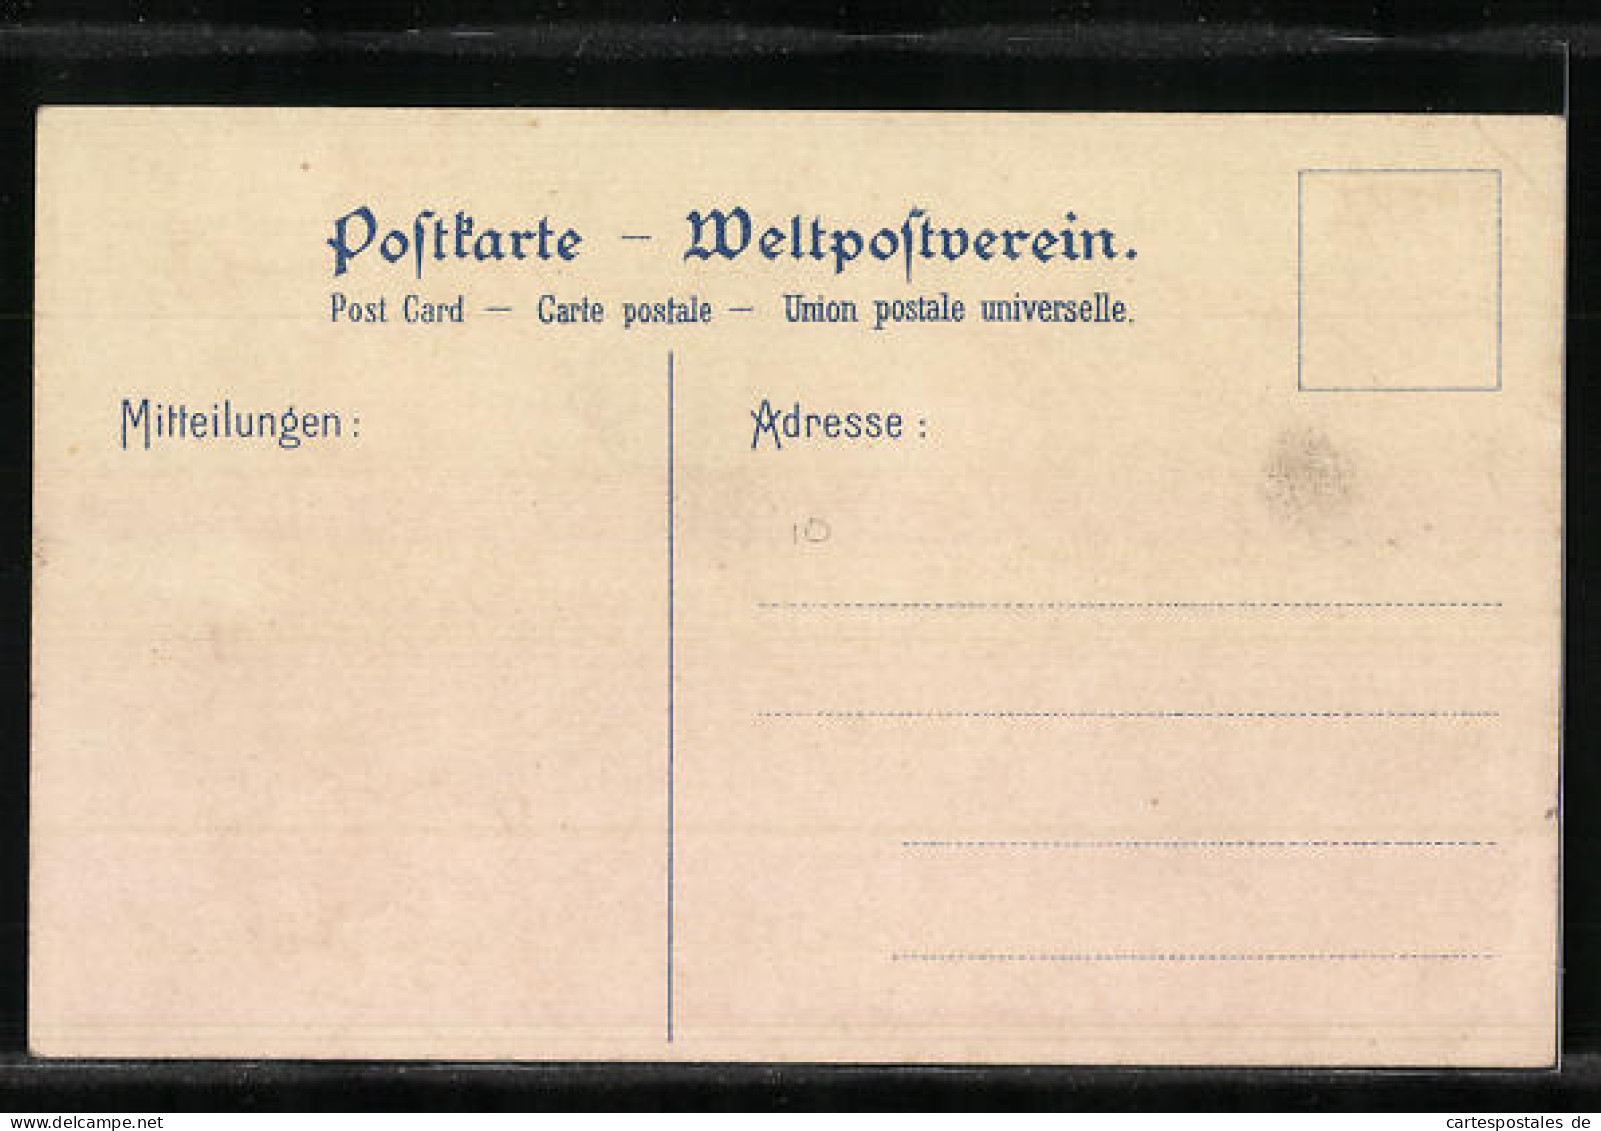 Lithographie Passagierschiff Kaiserin Auguste Victoria Der H.-A.-Linie In Voller Fahrt  - Passagiersschepen